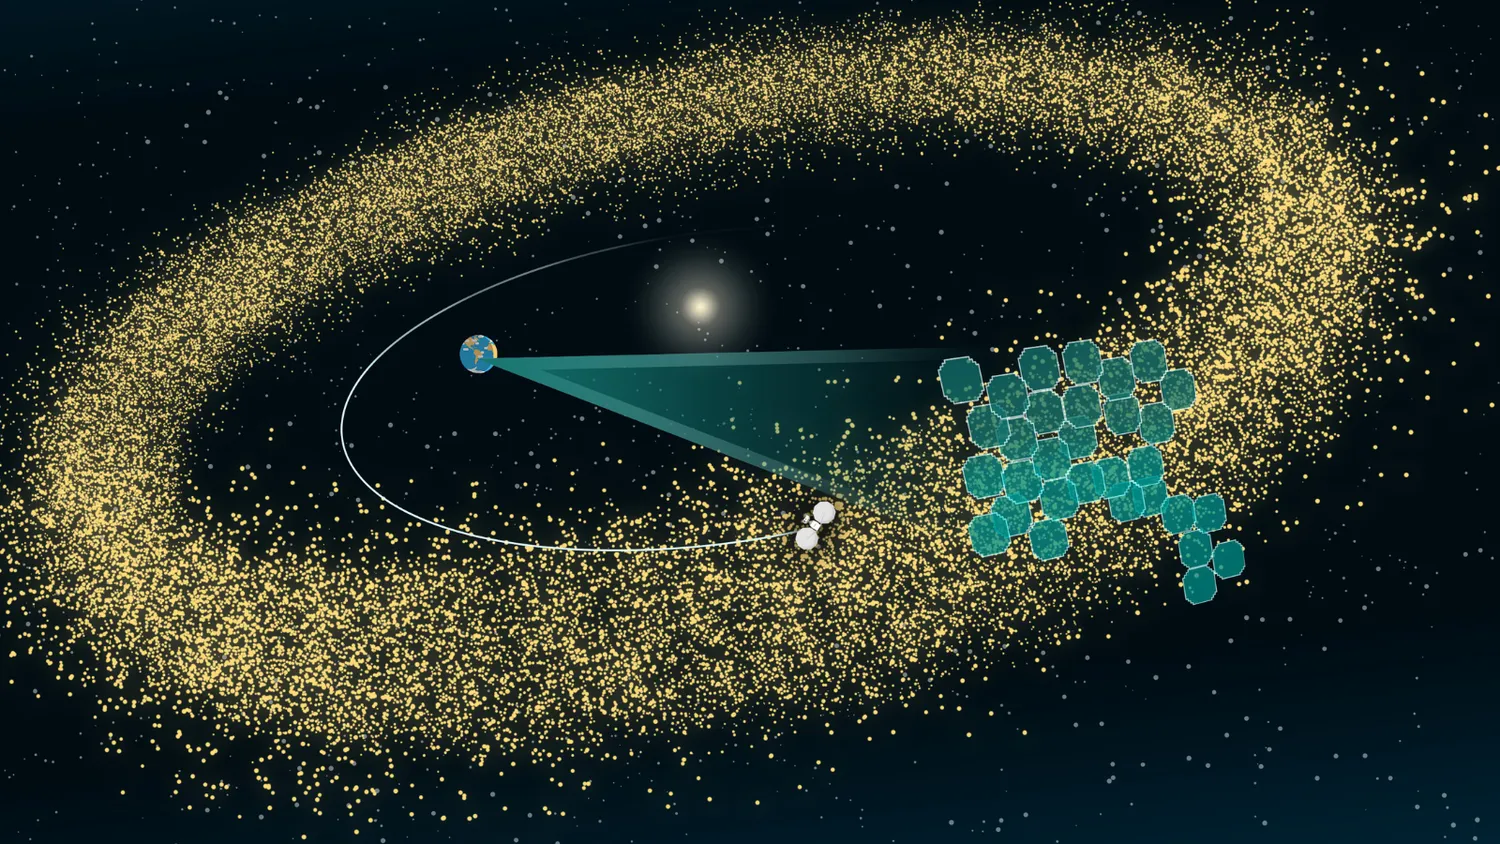  Eine Illustration des Asteroidengürtels als dichter, donutförmiger Ring aus gelben Punkten mit der Sonne in der Mitte. Der Hintergrund ist schwarz mit einem Hauch von Dunkelblau in den Ecken und kleinen weißen, punktförmigen Sternen, die überall verstreut sind. Eine kleine illustrierte Erde befindet sich links von der Sonne, und ein halb undurchsichtiges, kegelförmiges blaugrünes Dreieck erstreckt sich von der Erde nach rechts. Der Kegel öffnet sich zu einem Mosaik aus ein paar Dutzend kleiner, quadratischer Formen, die den Detektorbereich der LSST-Kamera des Rubin-Observatoriums darstellen. Das Mosaik ist einem Teil des Asteroidengürtels überlagert, und jede Kachel stellt ein Kamerabild dar, das eine Gruppe von Asteroiden erfasst. Eine dünne gekrümmte weiße Linie beginnt hinter der Sonne und schwingt sich um die Erde herum. Sie zeichnet den Weg eines kleinen, nicht maßstabsgetreuen Raumschiffs nach, das sich auf die beleuchteten Asteroiden zubewegt, um sie zu erforschen.